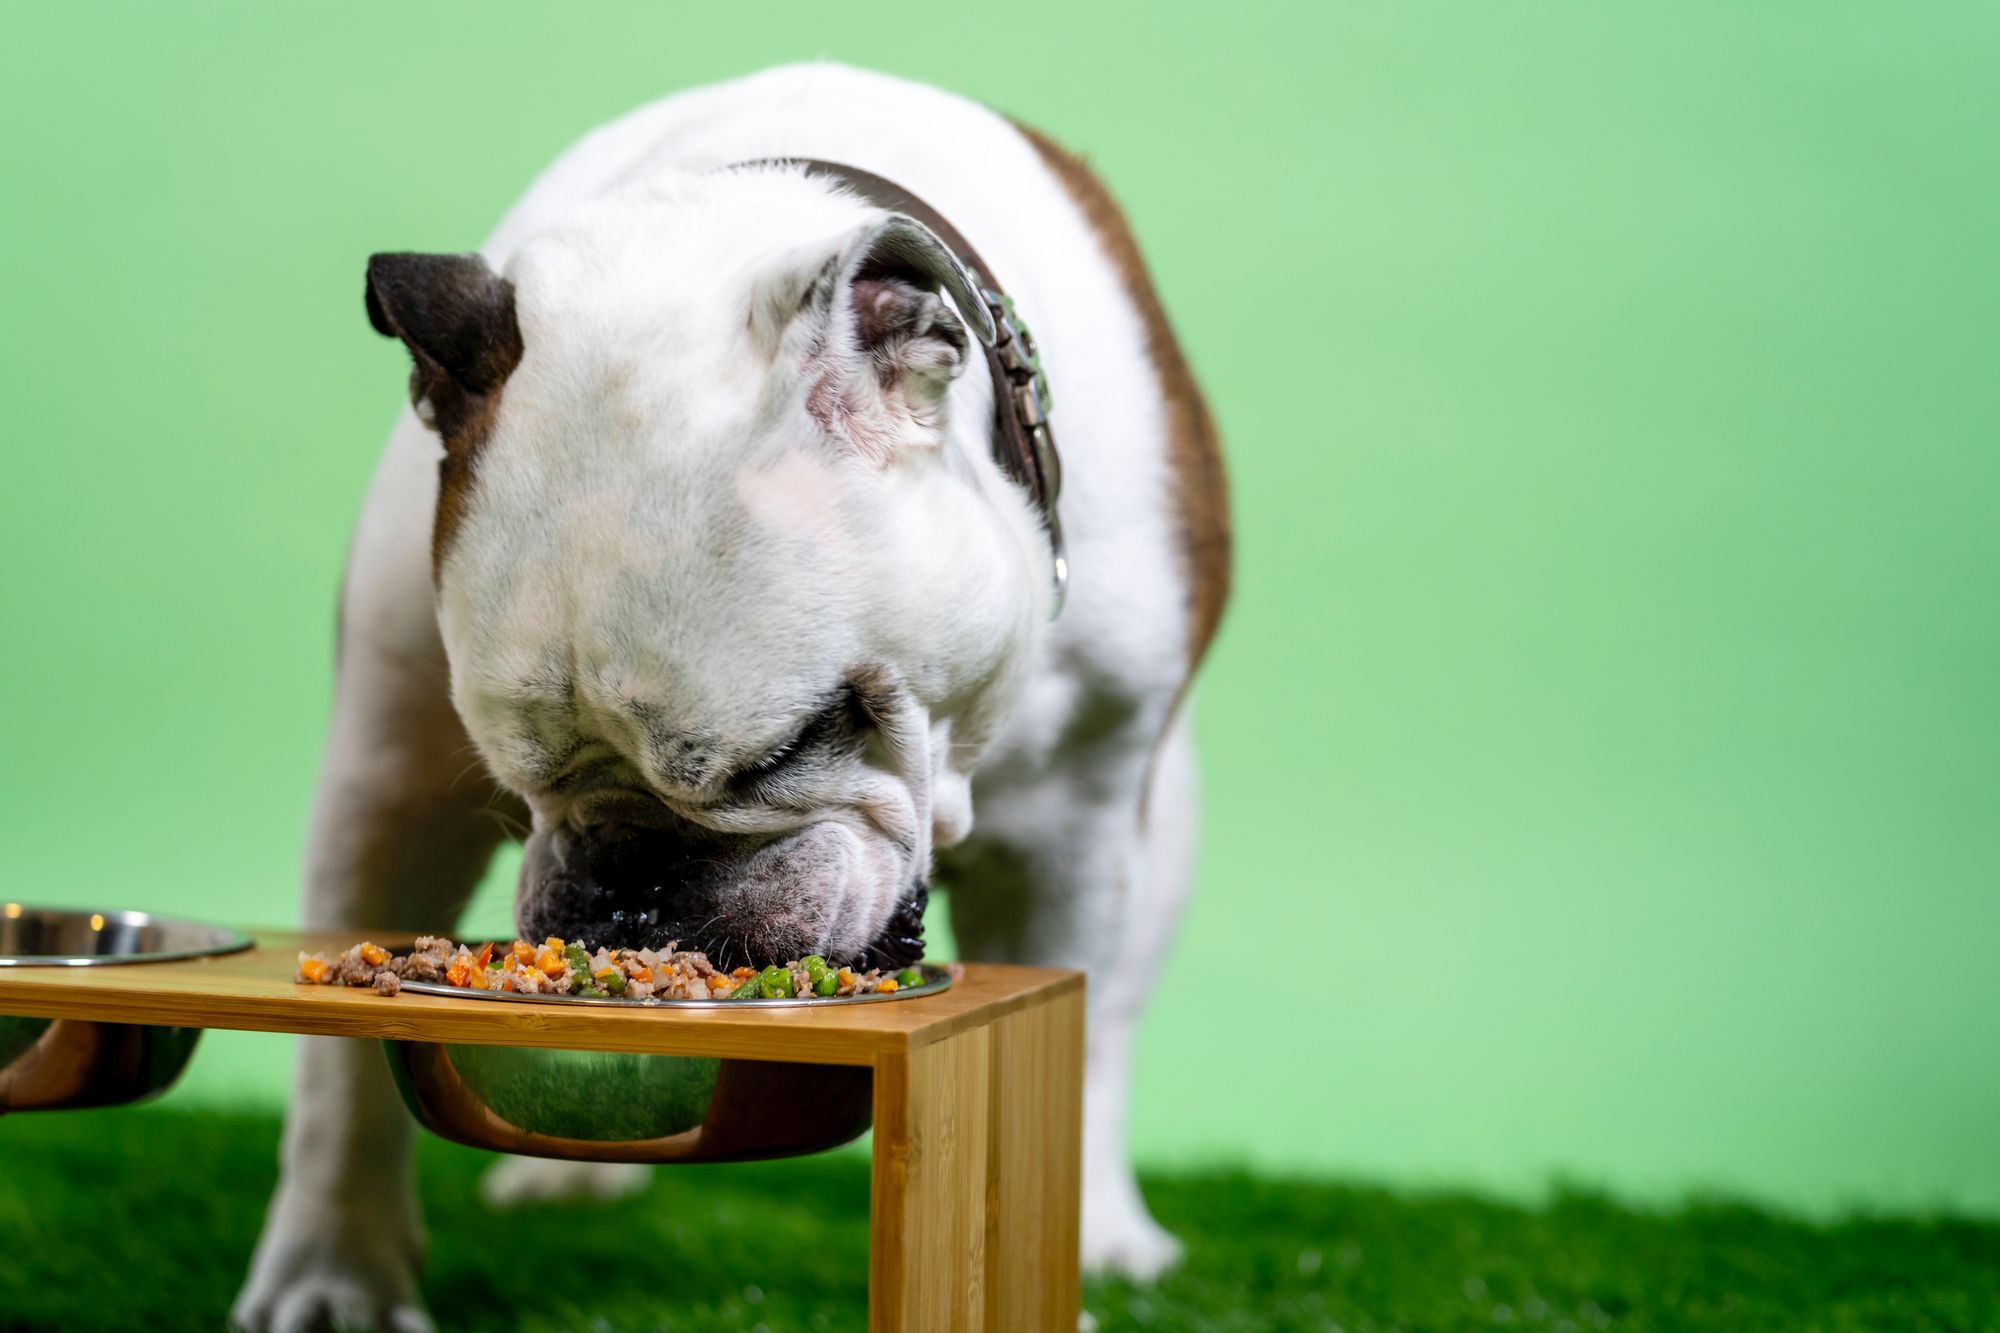 english bulldog eating from a bowl